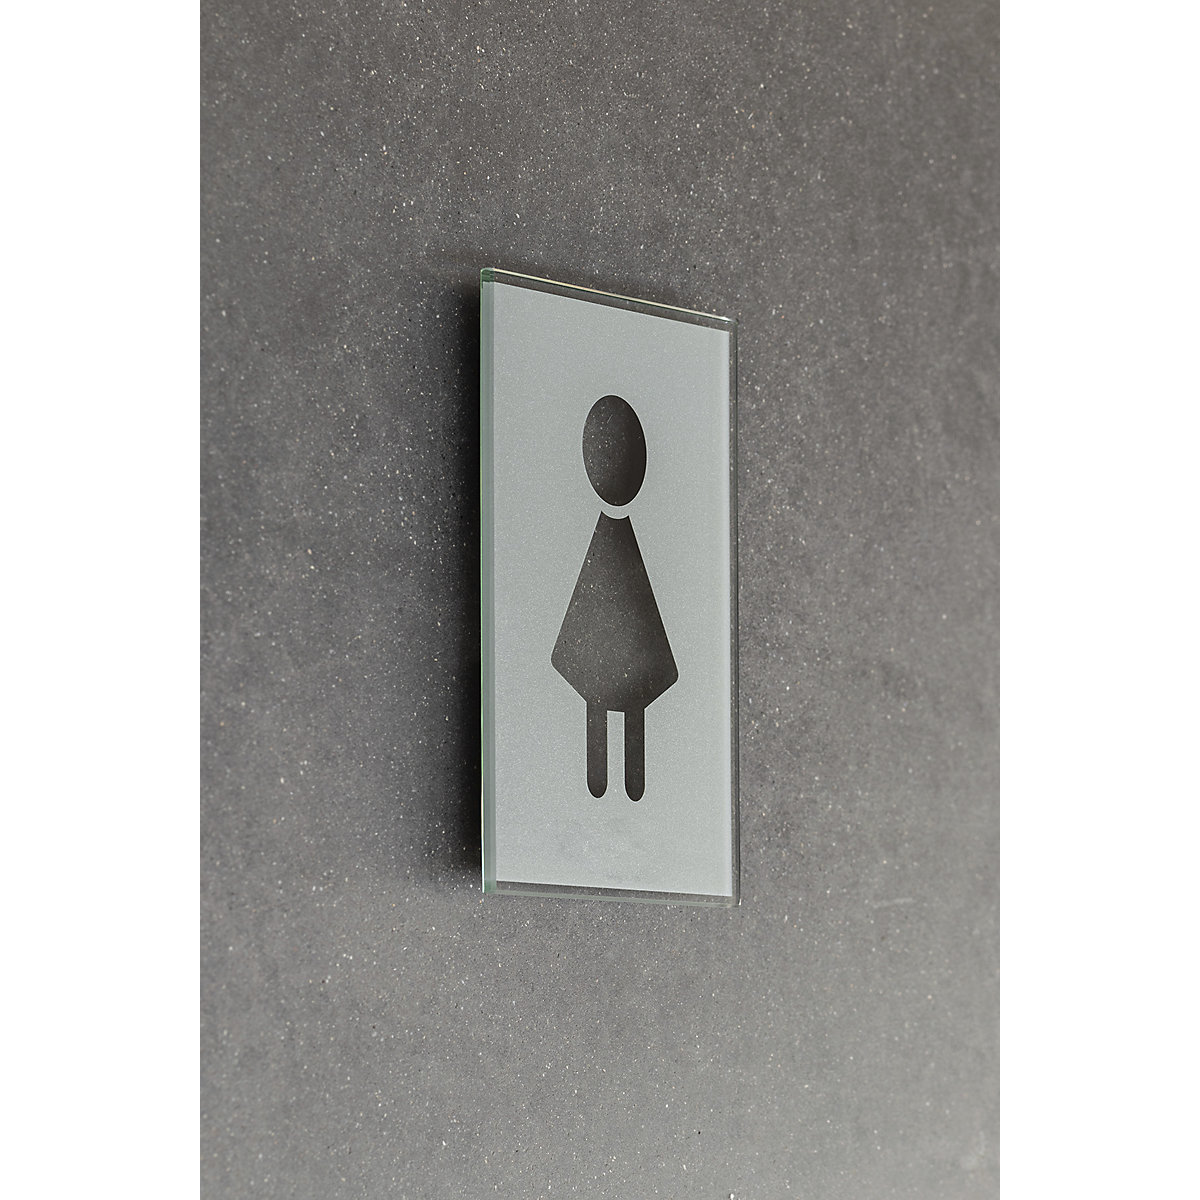 Tablica za vrata s simbolom za WC